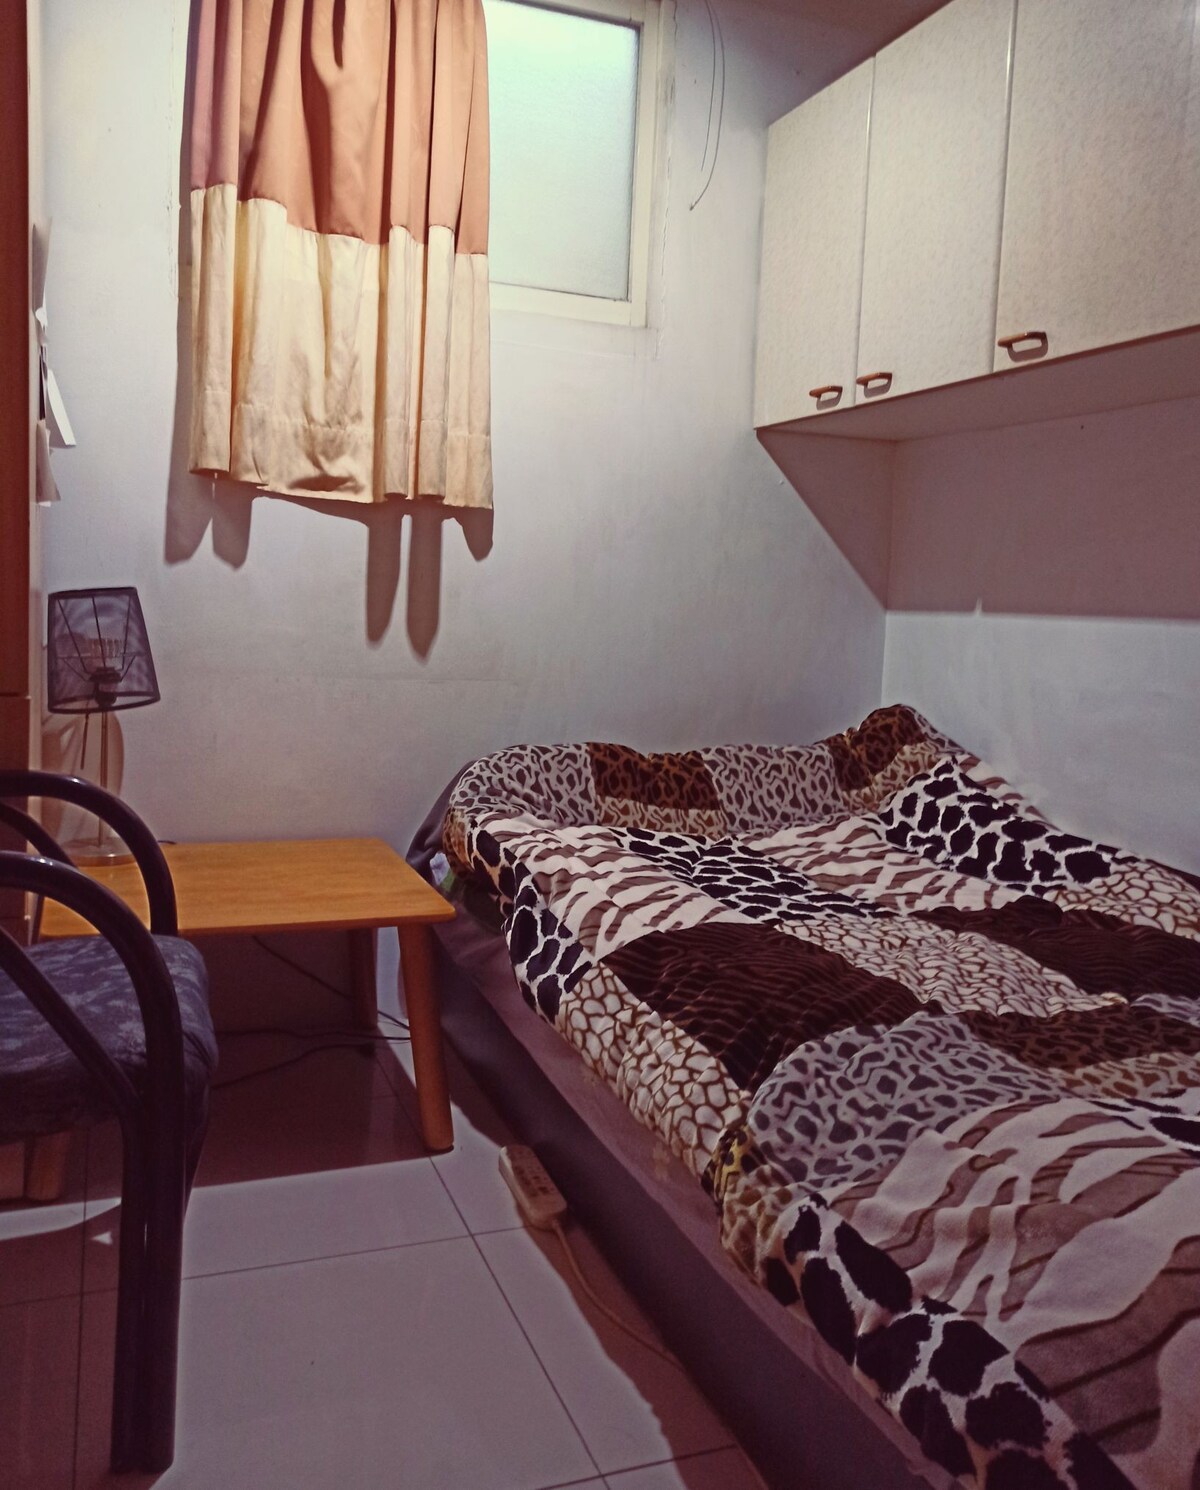 近竹北區適合出差工作或旅行中點休息的舒適簡易單人房